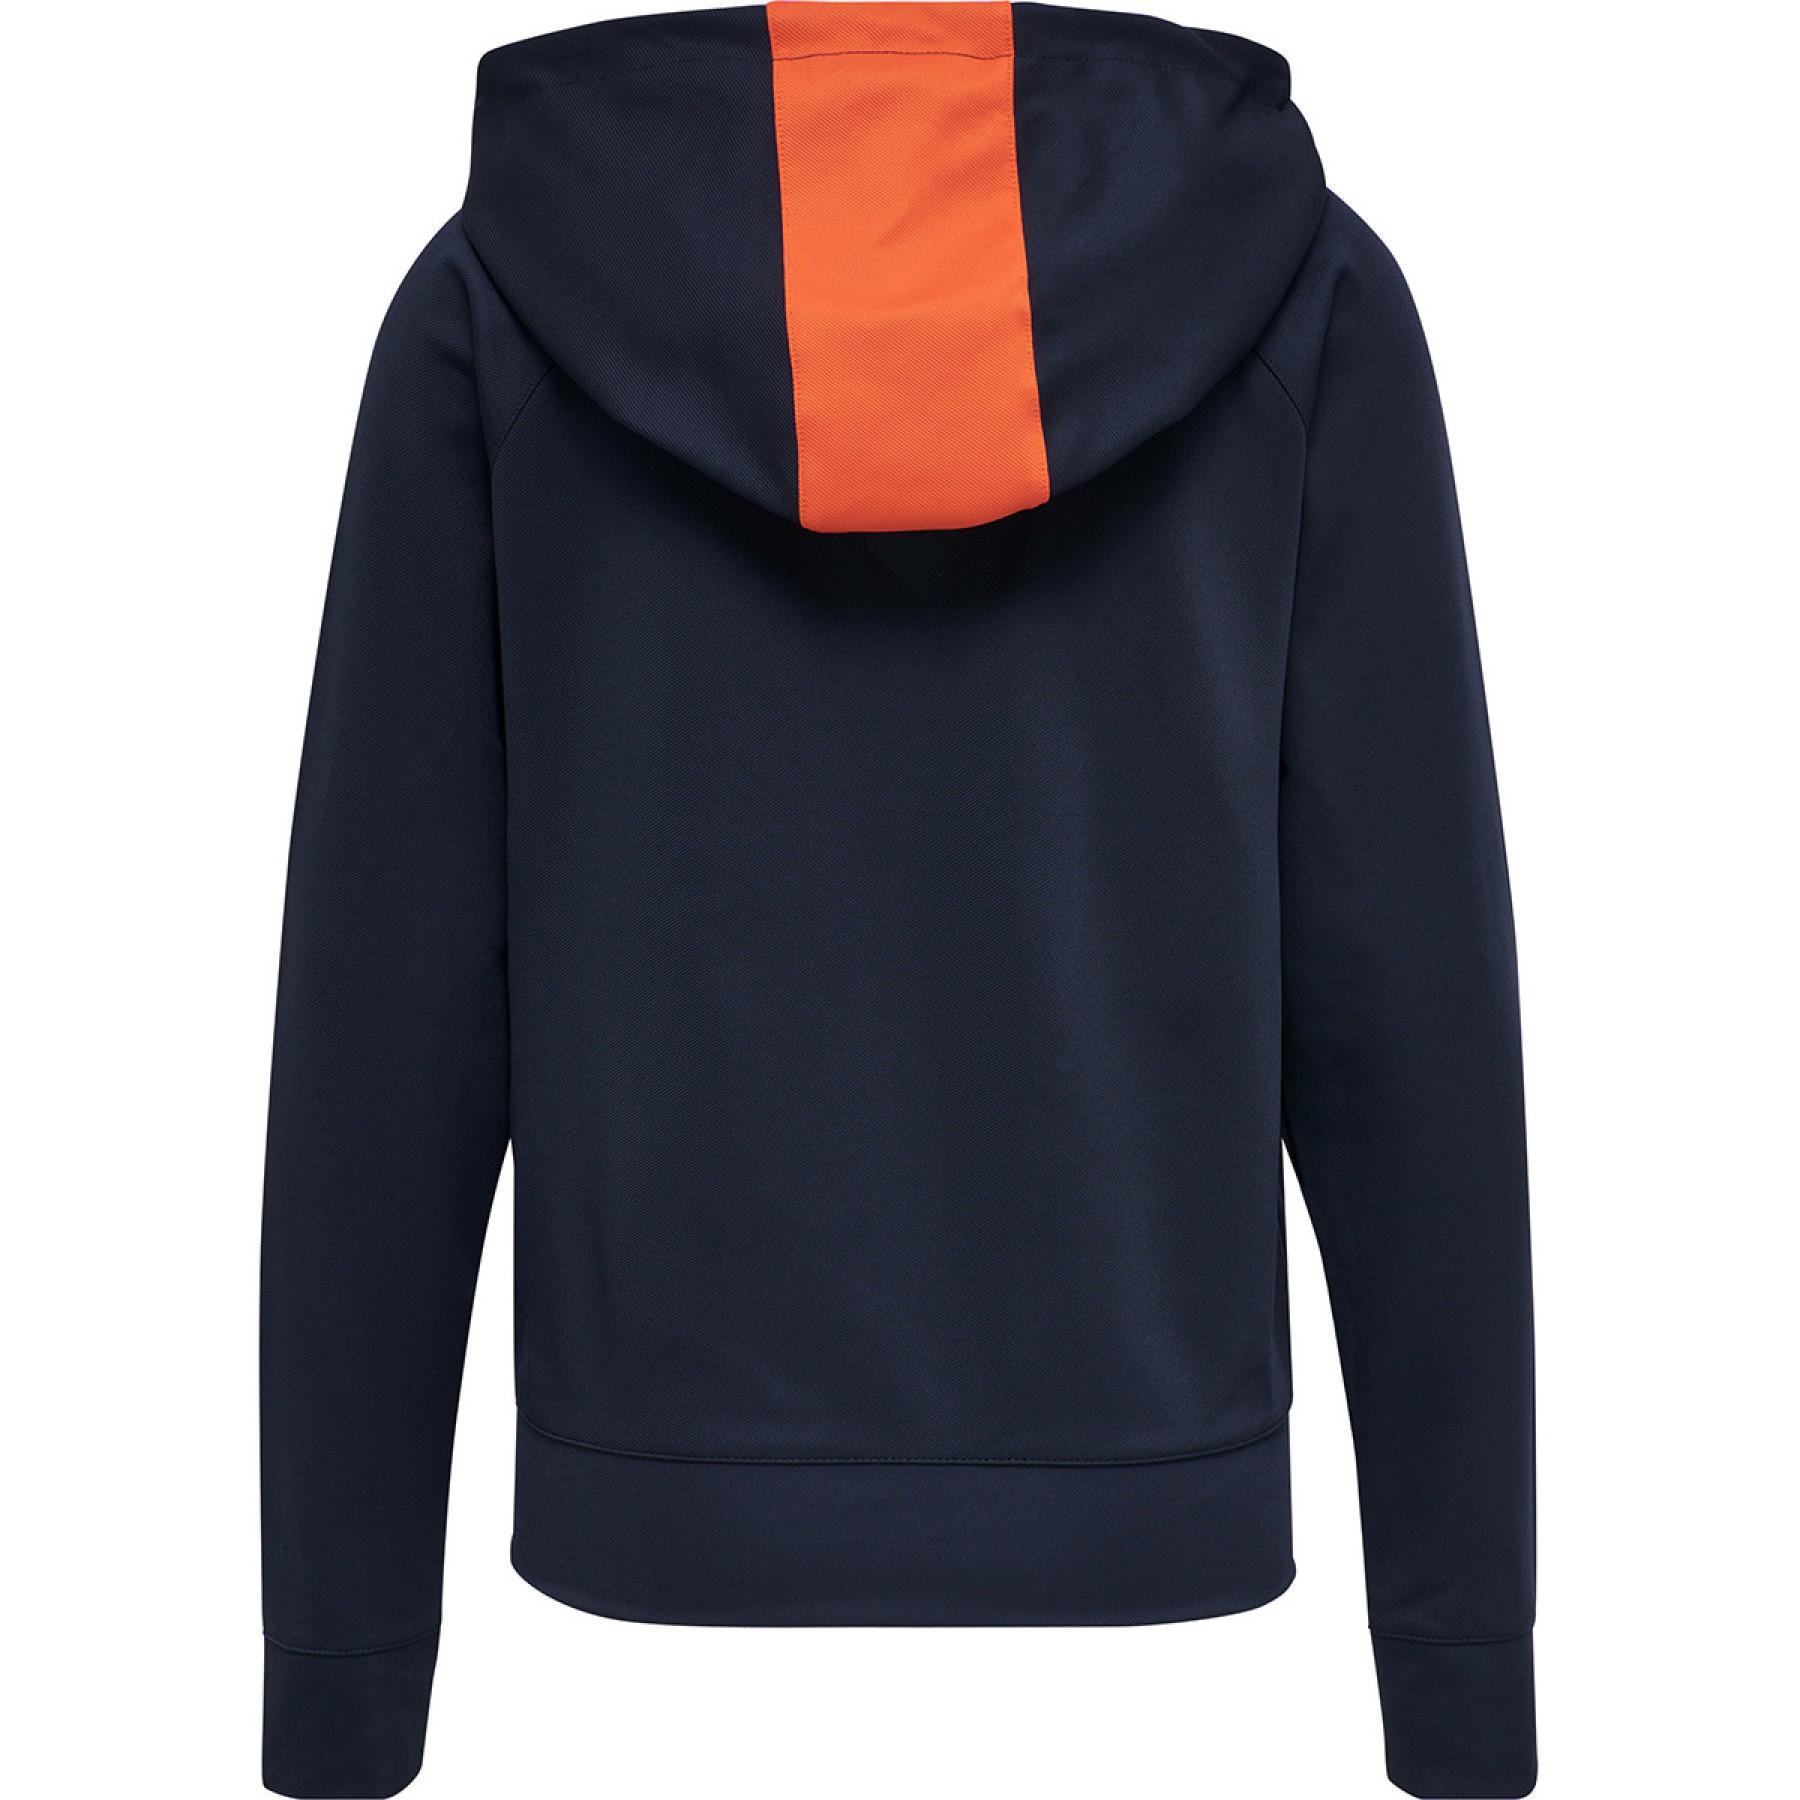 Women's hooded sweatshirt Hummel hmlaction zip